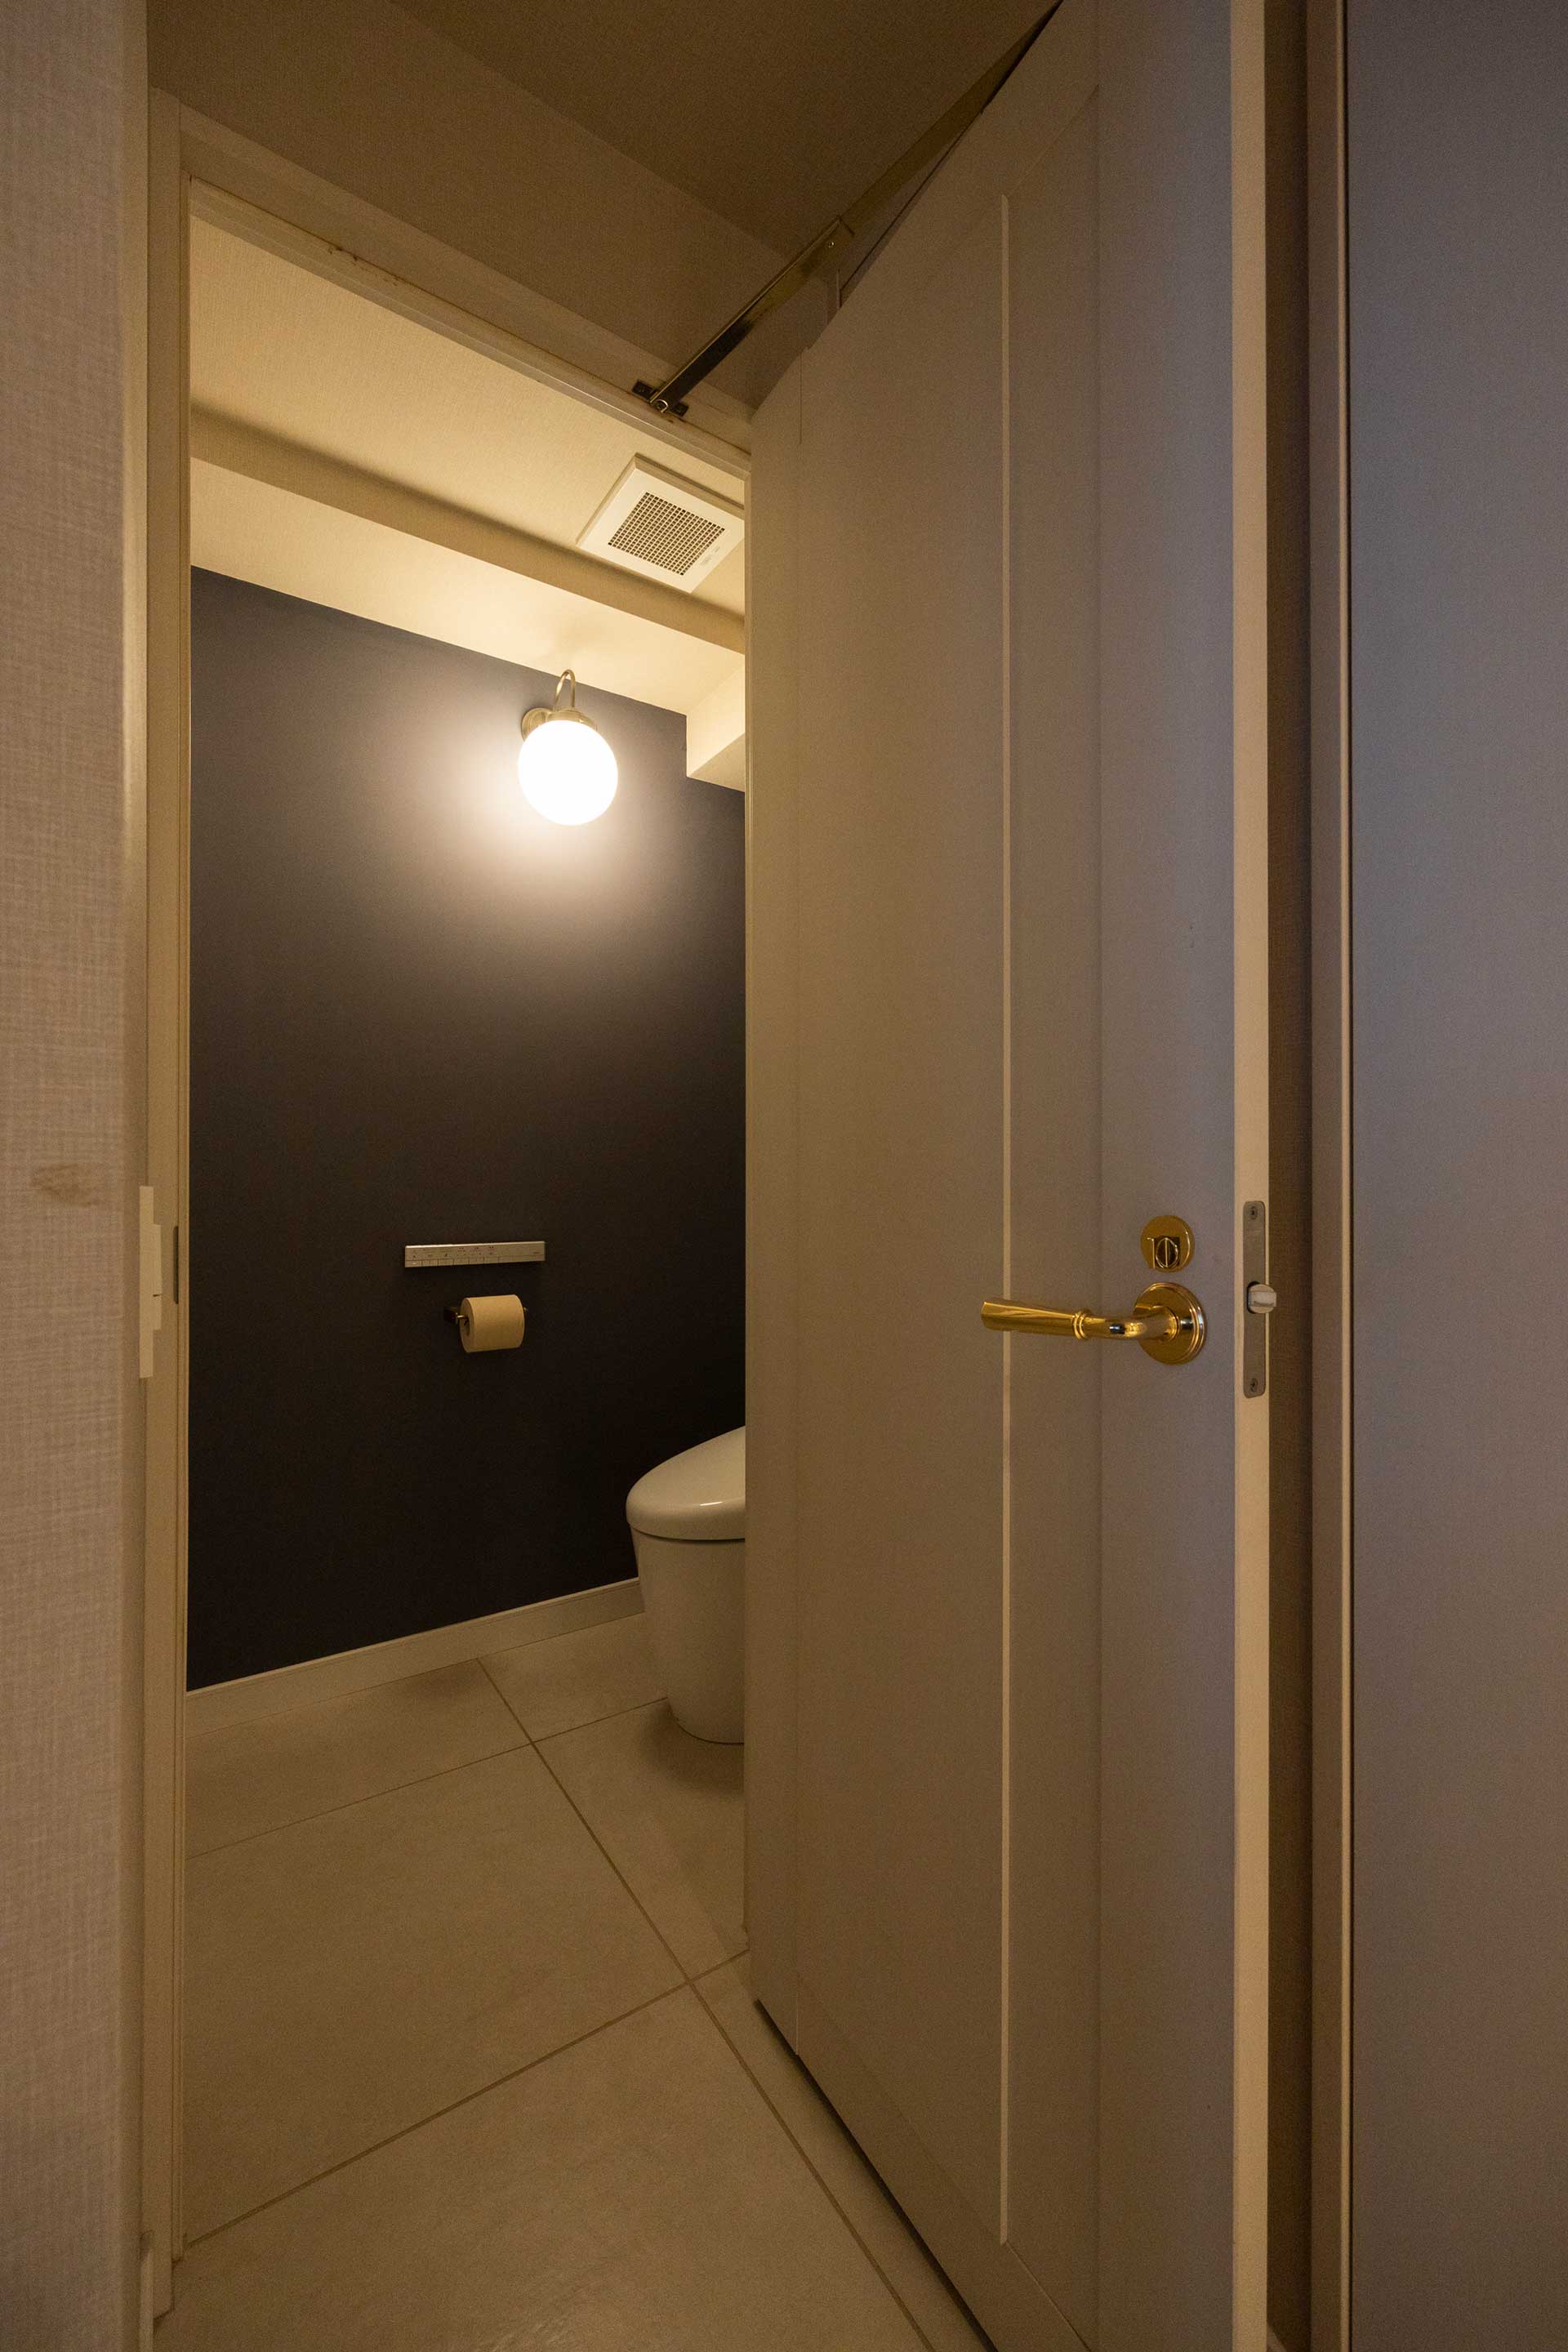 トイレの壁はいちばん濃いグレーを選択。真鍮のペーパーホルダー、業務用のシンプルなバーにこだわった。